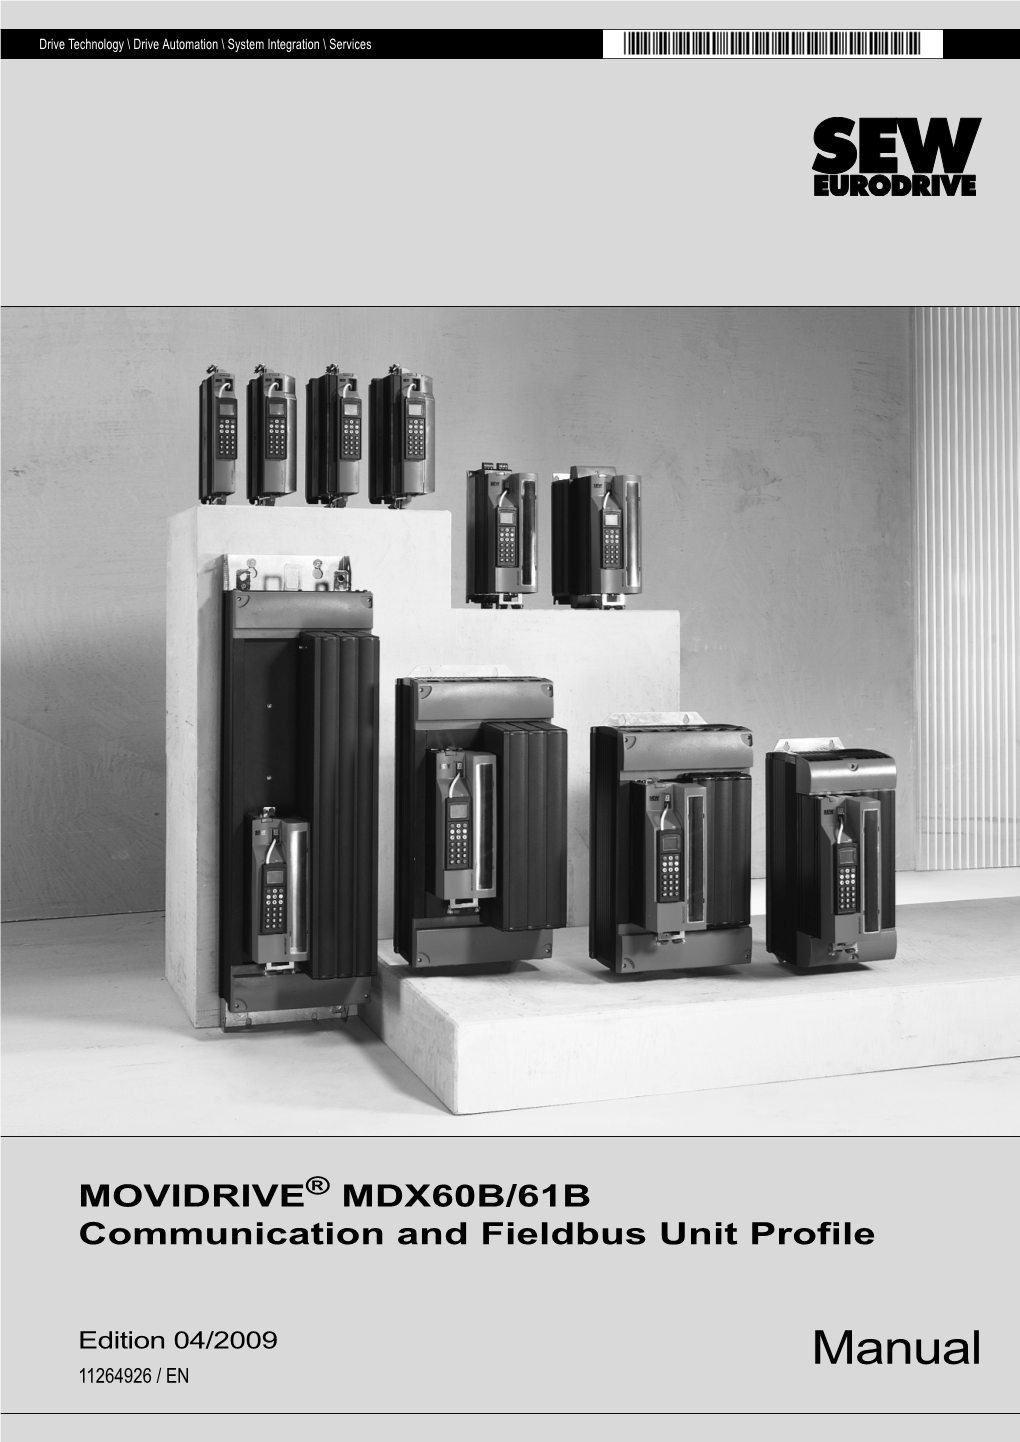 MOVIDRIVE® MDX60B/61B Communication and Fieldbus Unit Profile